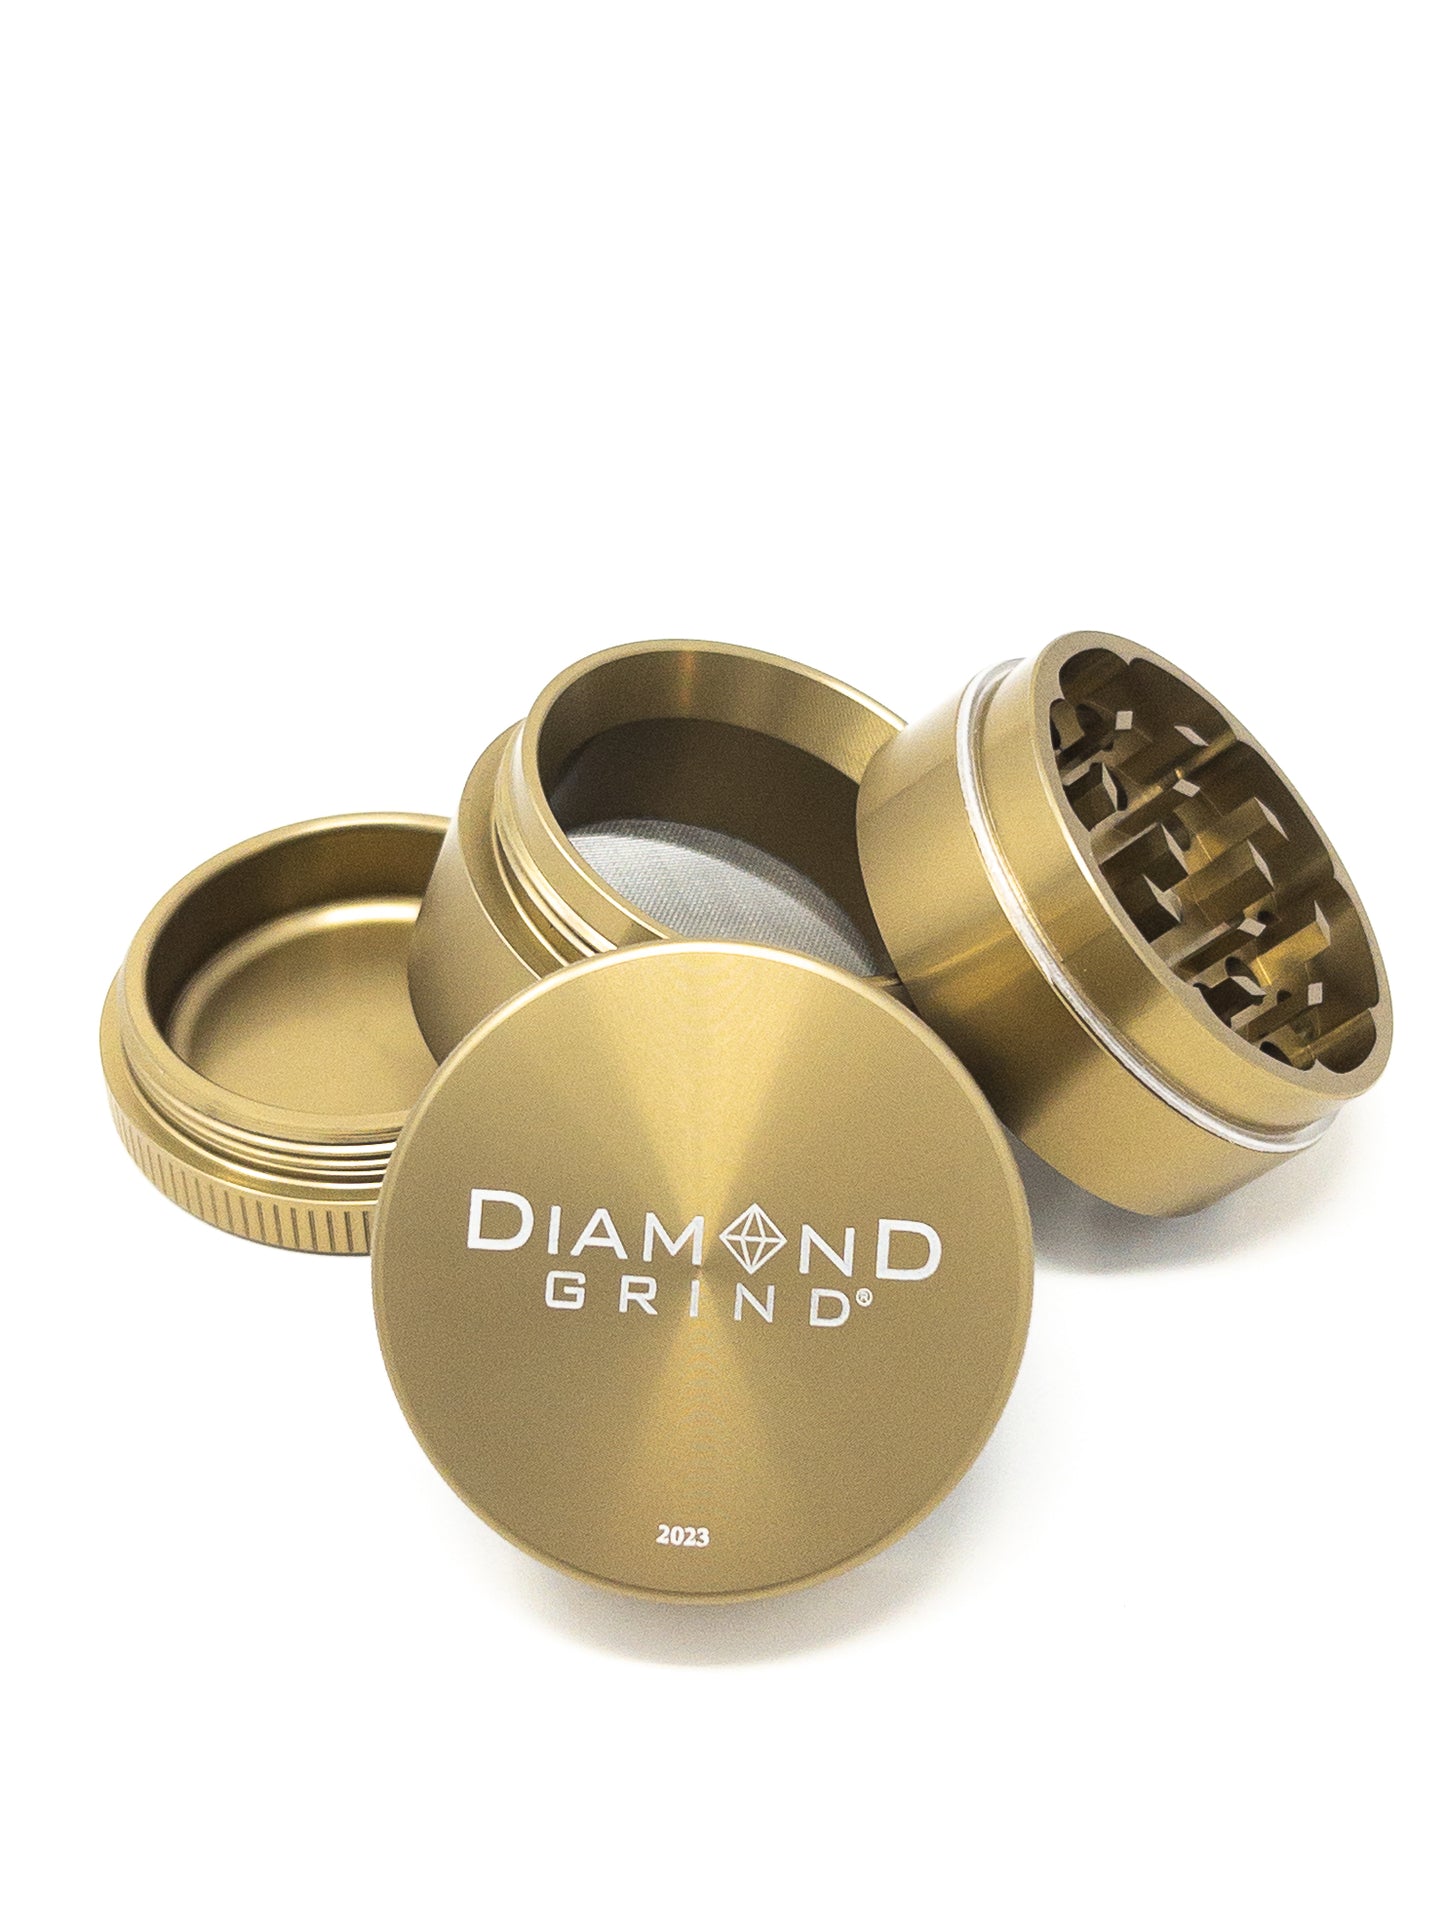 Diamond Grind Herb Grinder 4 Piece